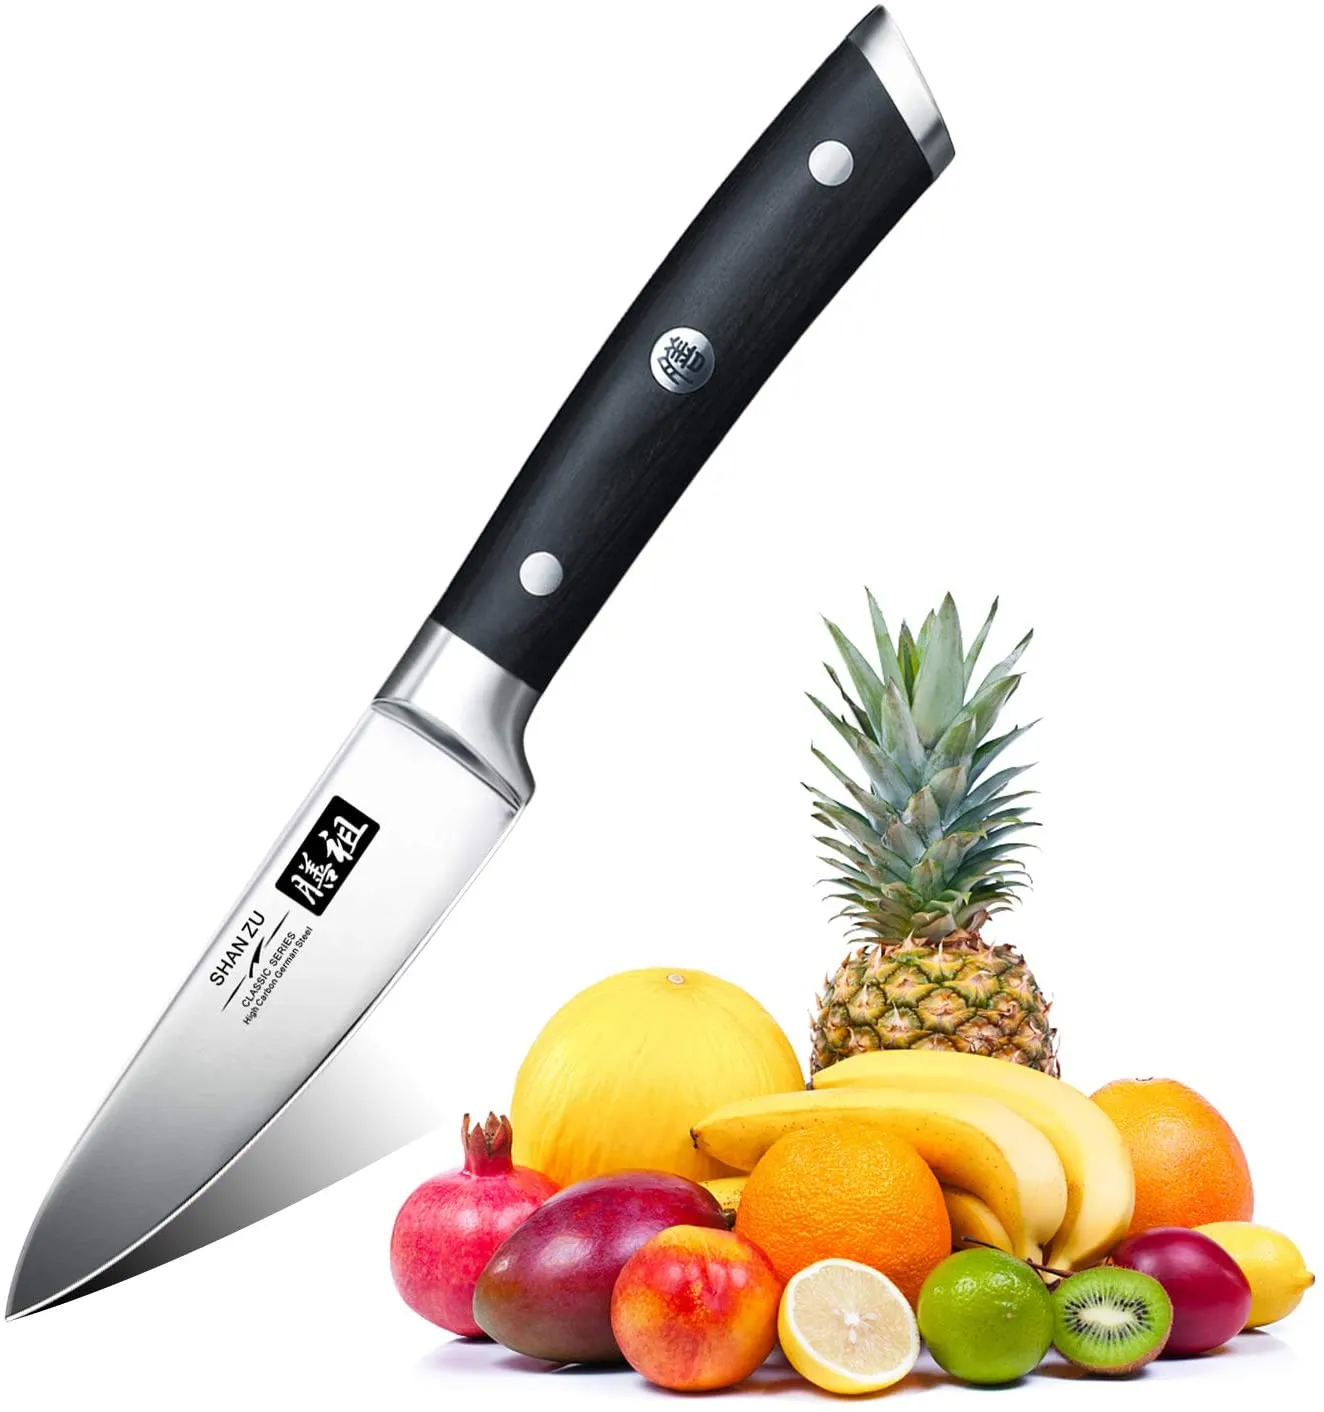 Couteaux de cuisine  Les meilleurs couteaux de cuisine